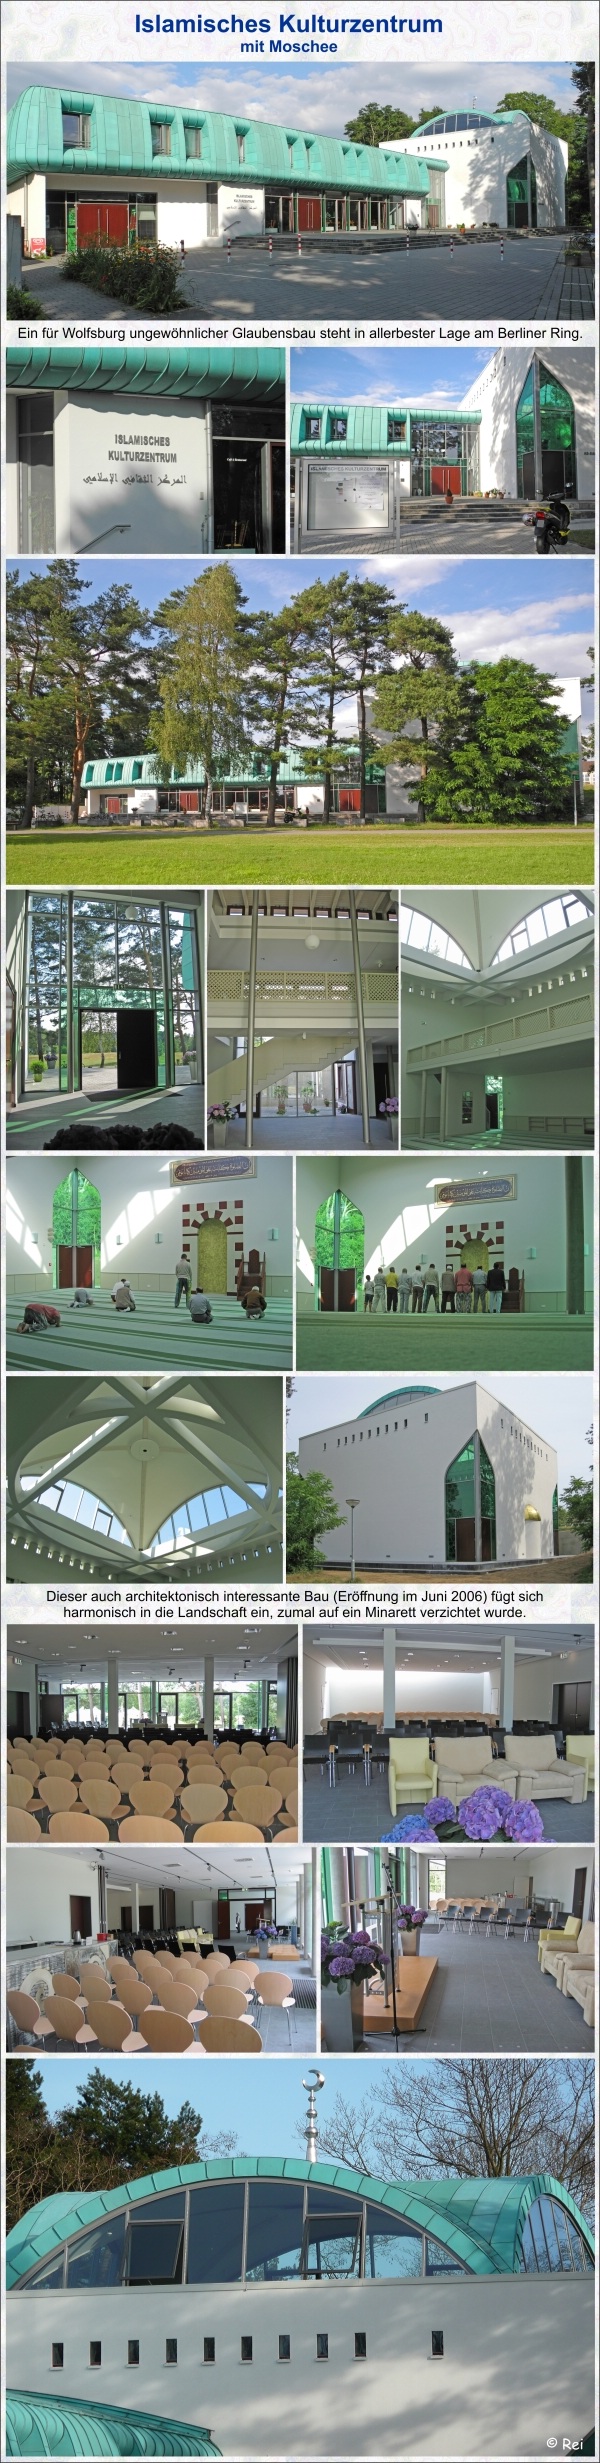 Islamisches Kulturzentrum Wolfsburg mit Moschee